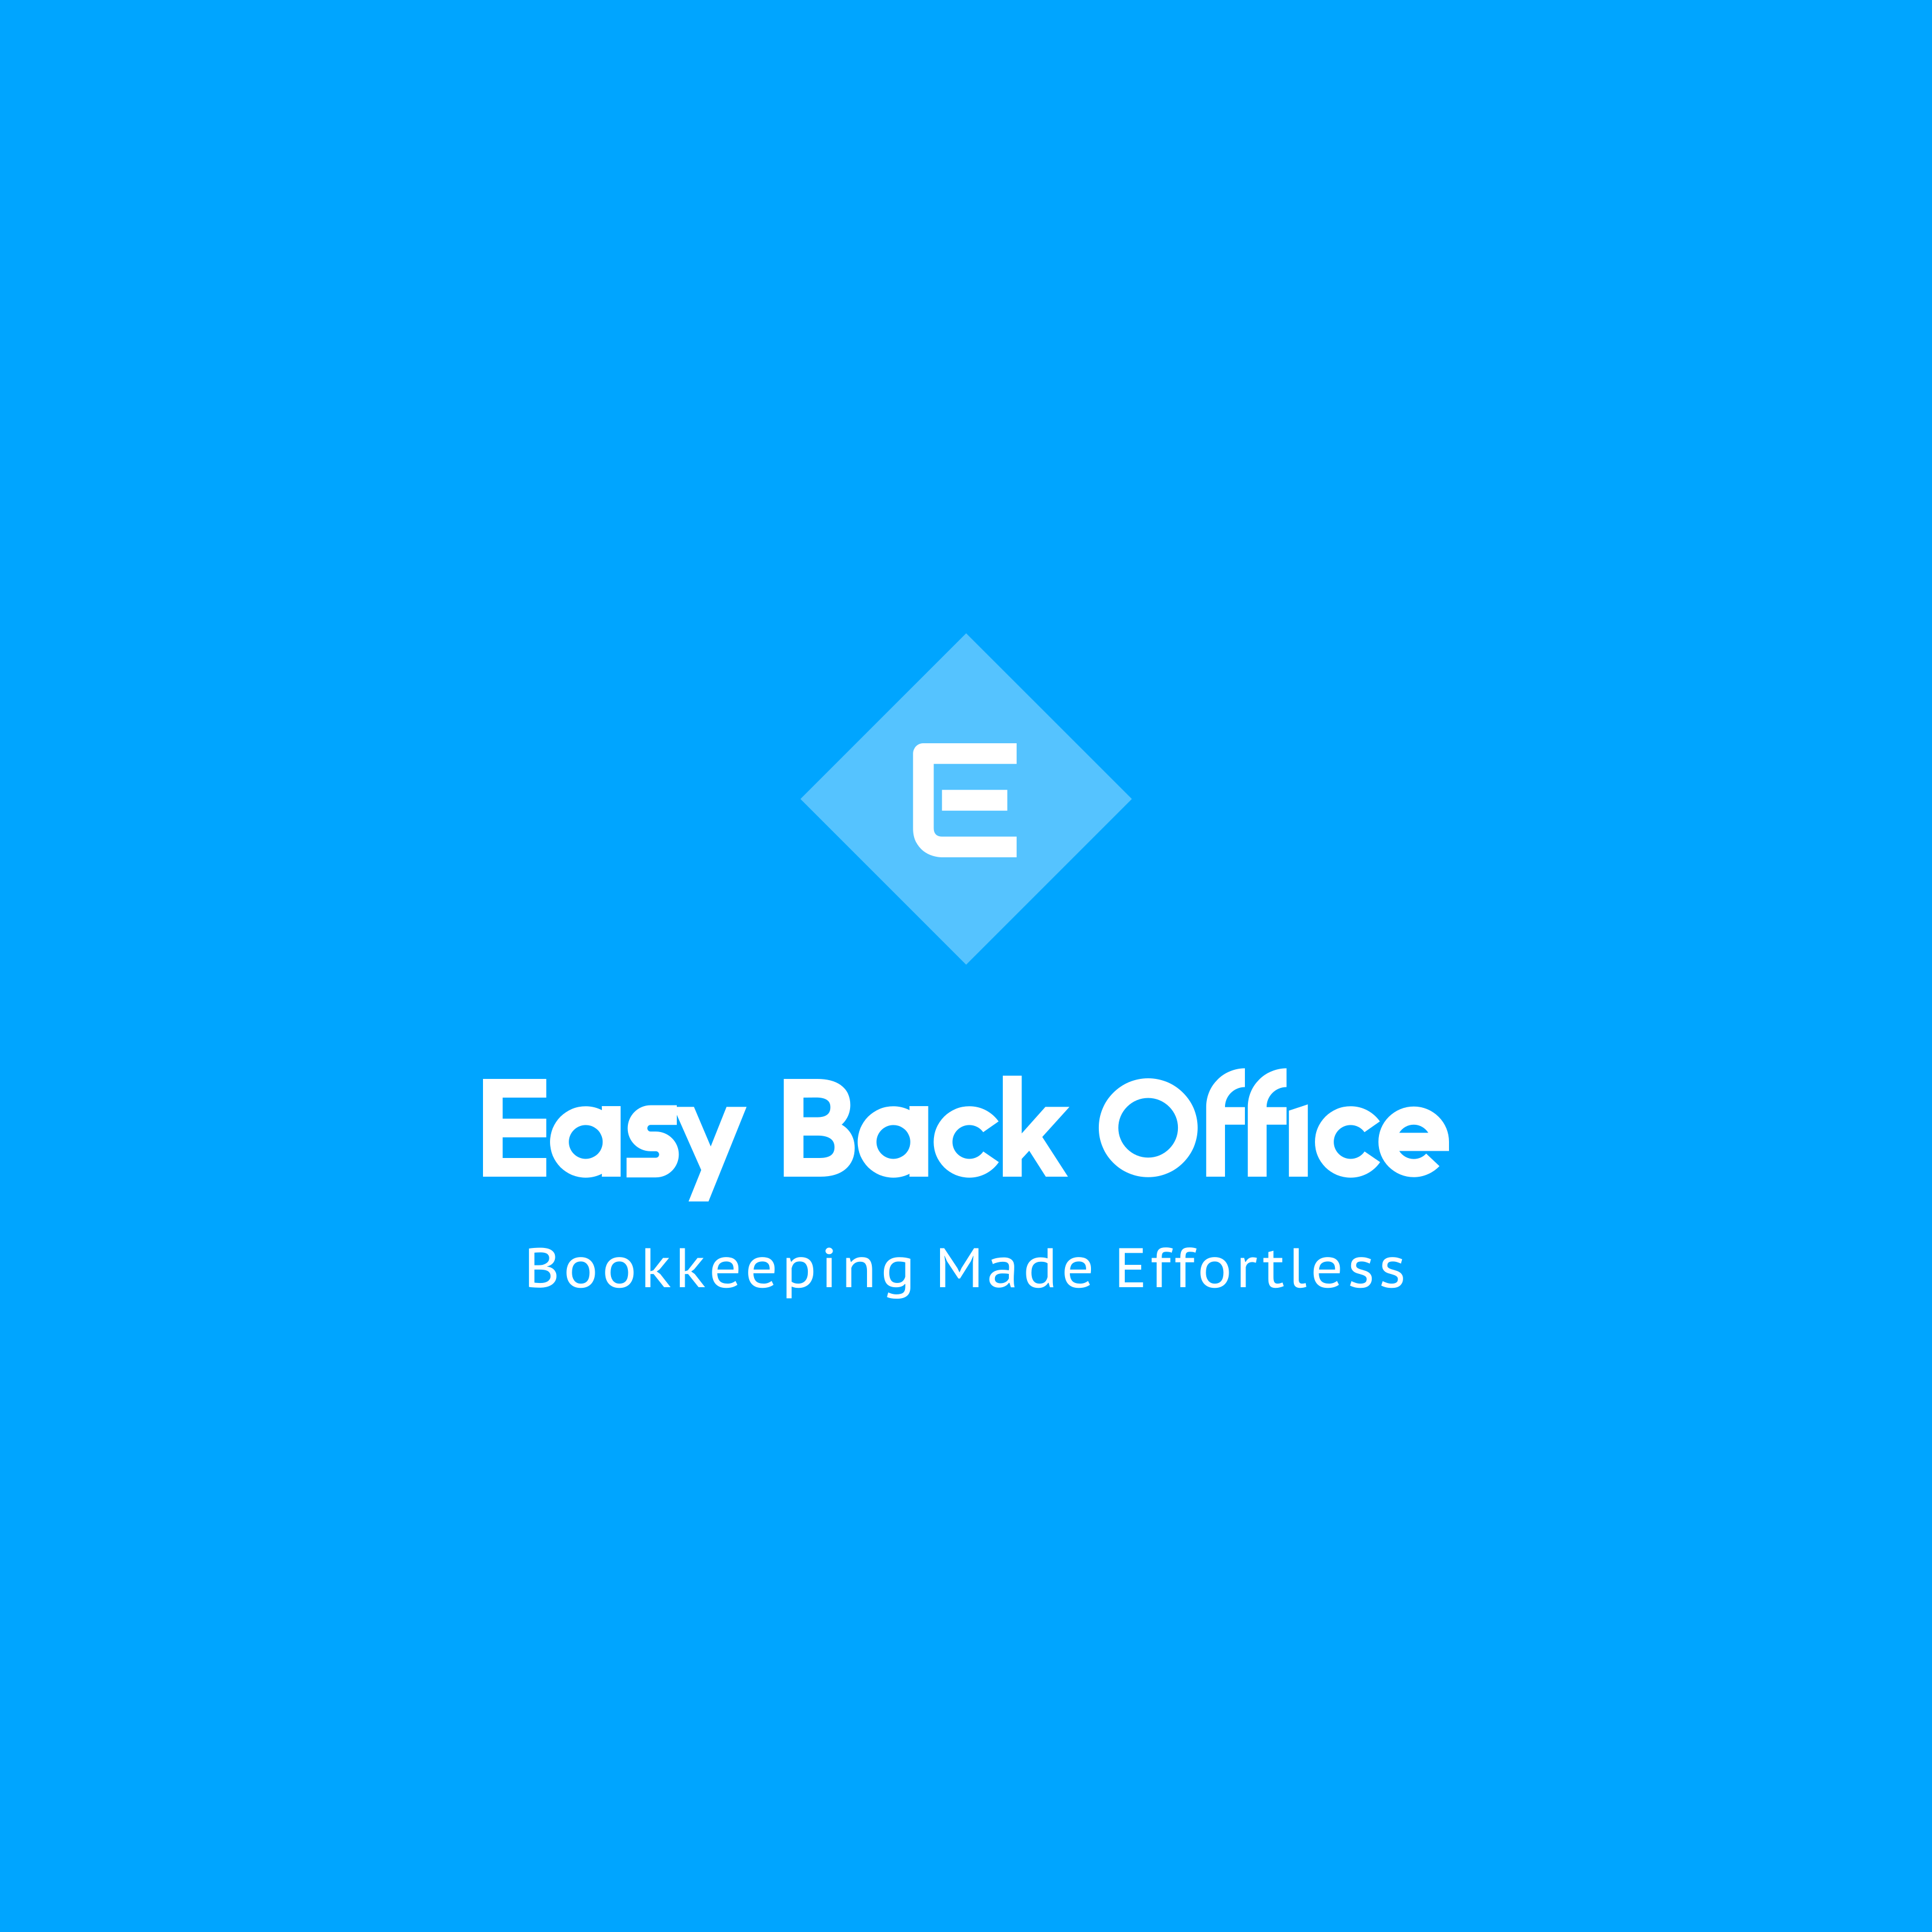 Easy Back Office